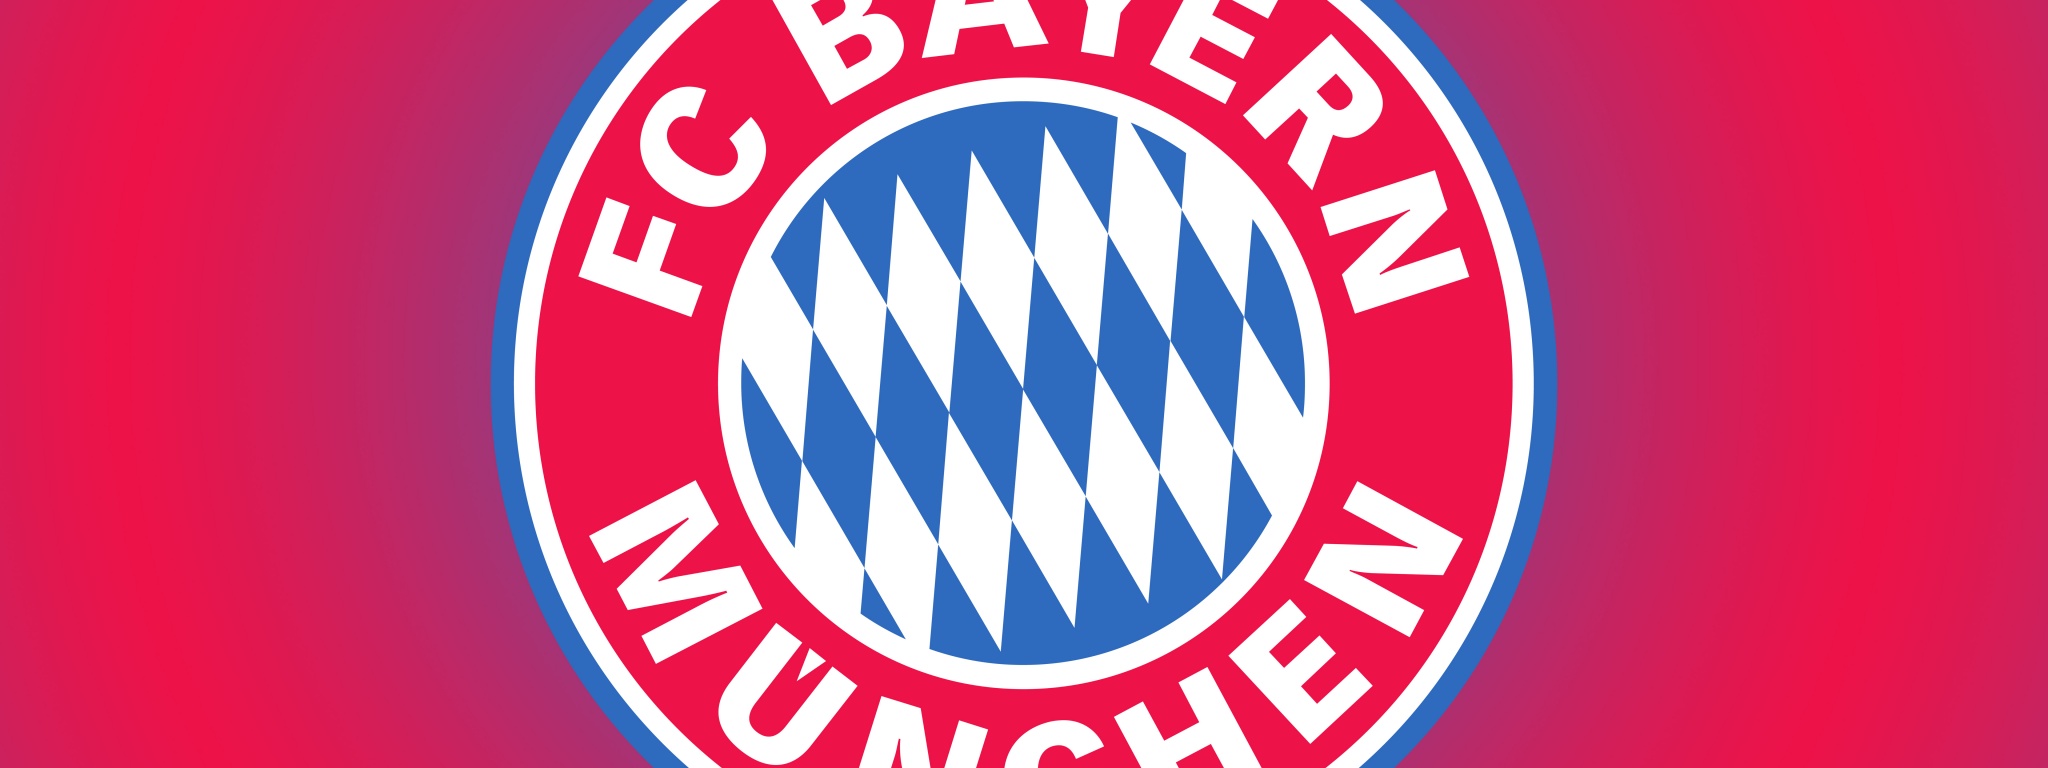 Bayern Munich Football Club Logo